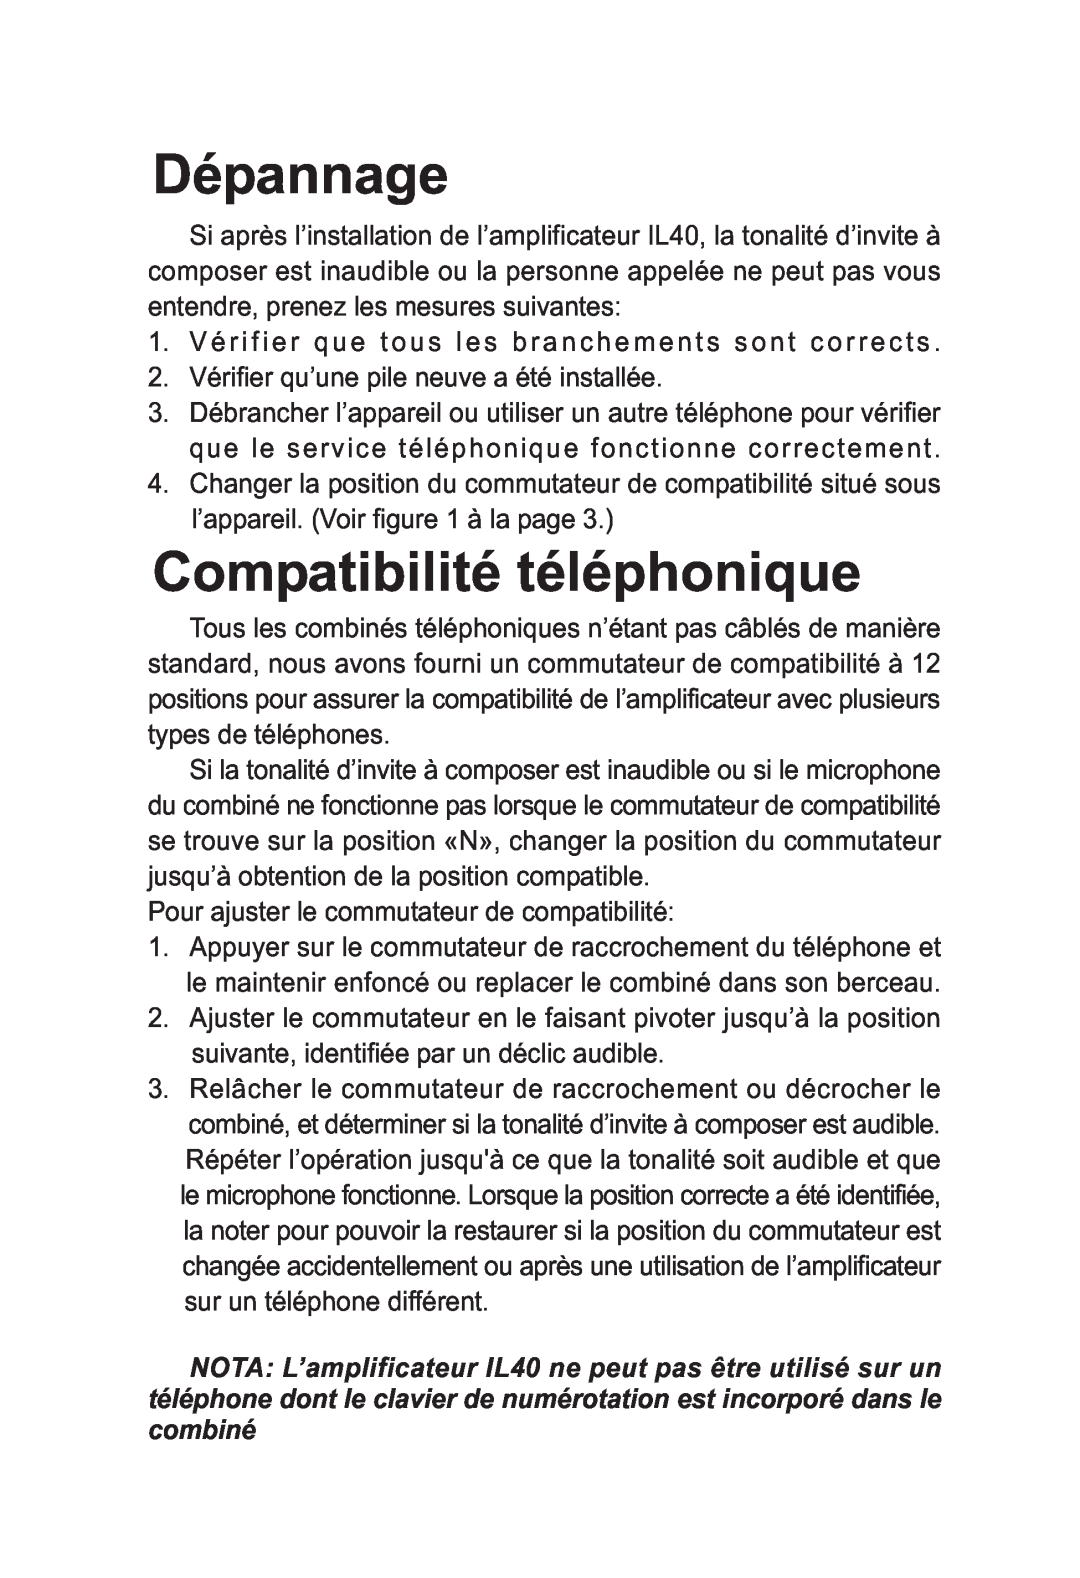 ClearSounds IL40 manual Dépannage, Compatibilité téléphonique 